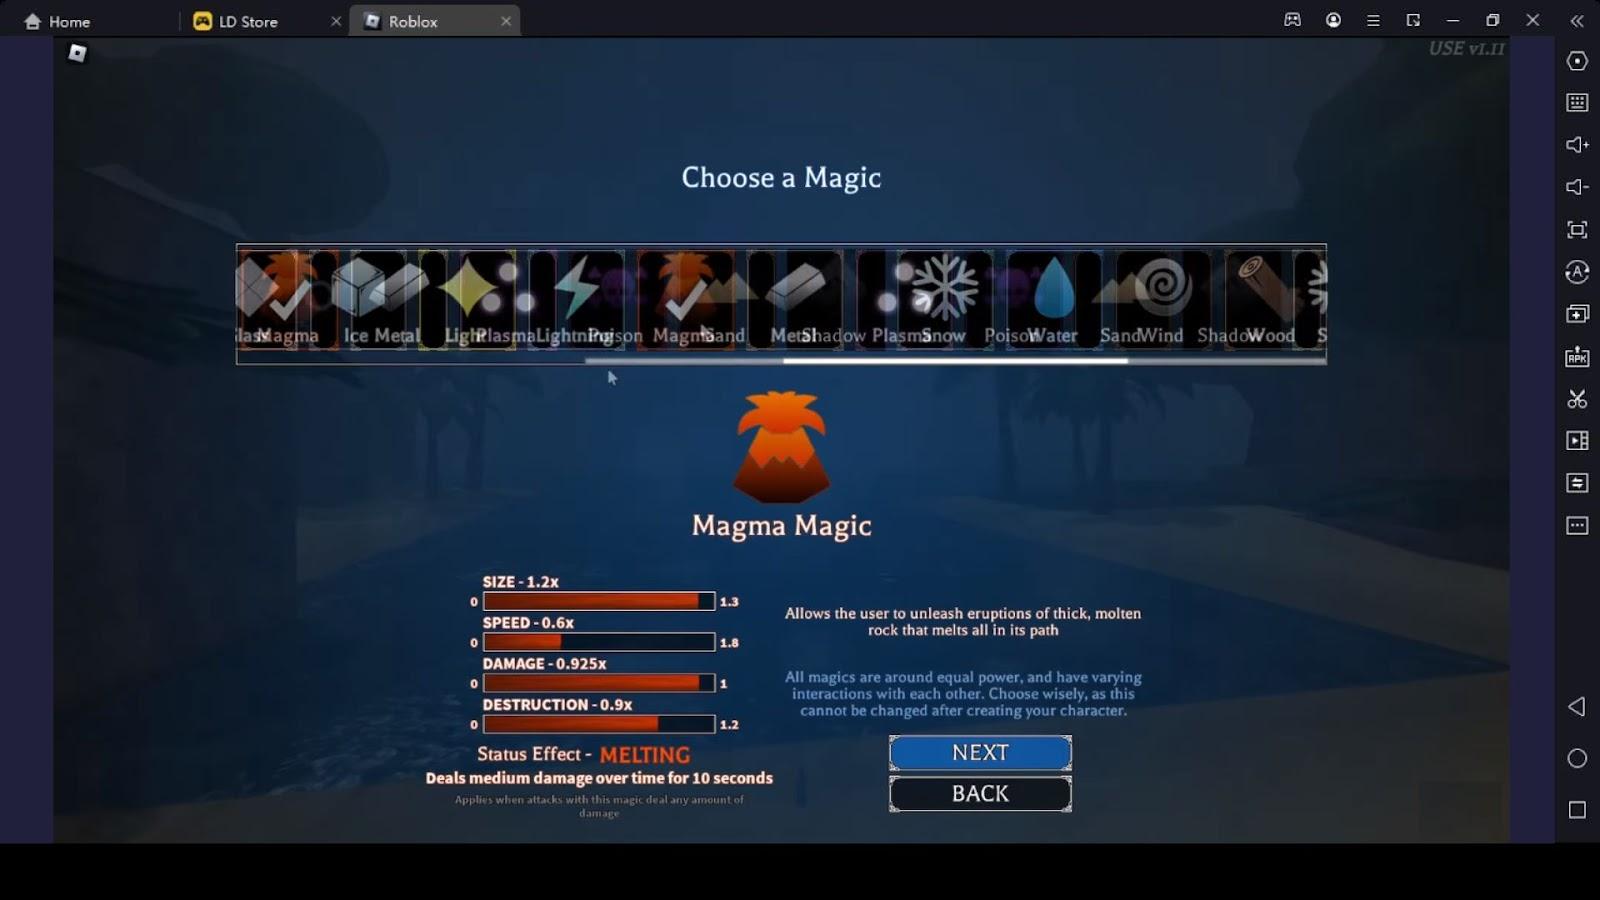 Magma Magic